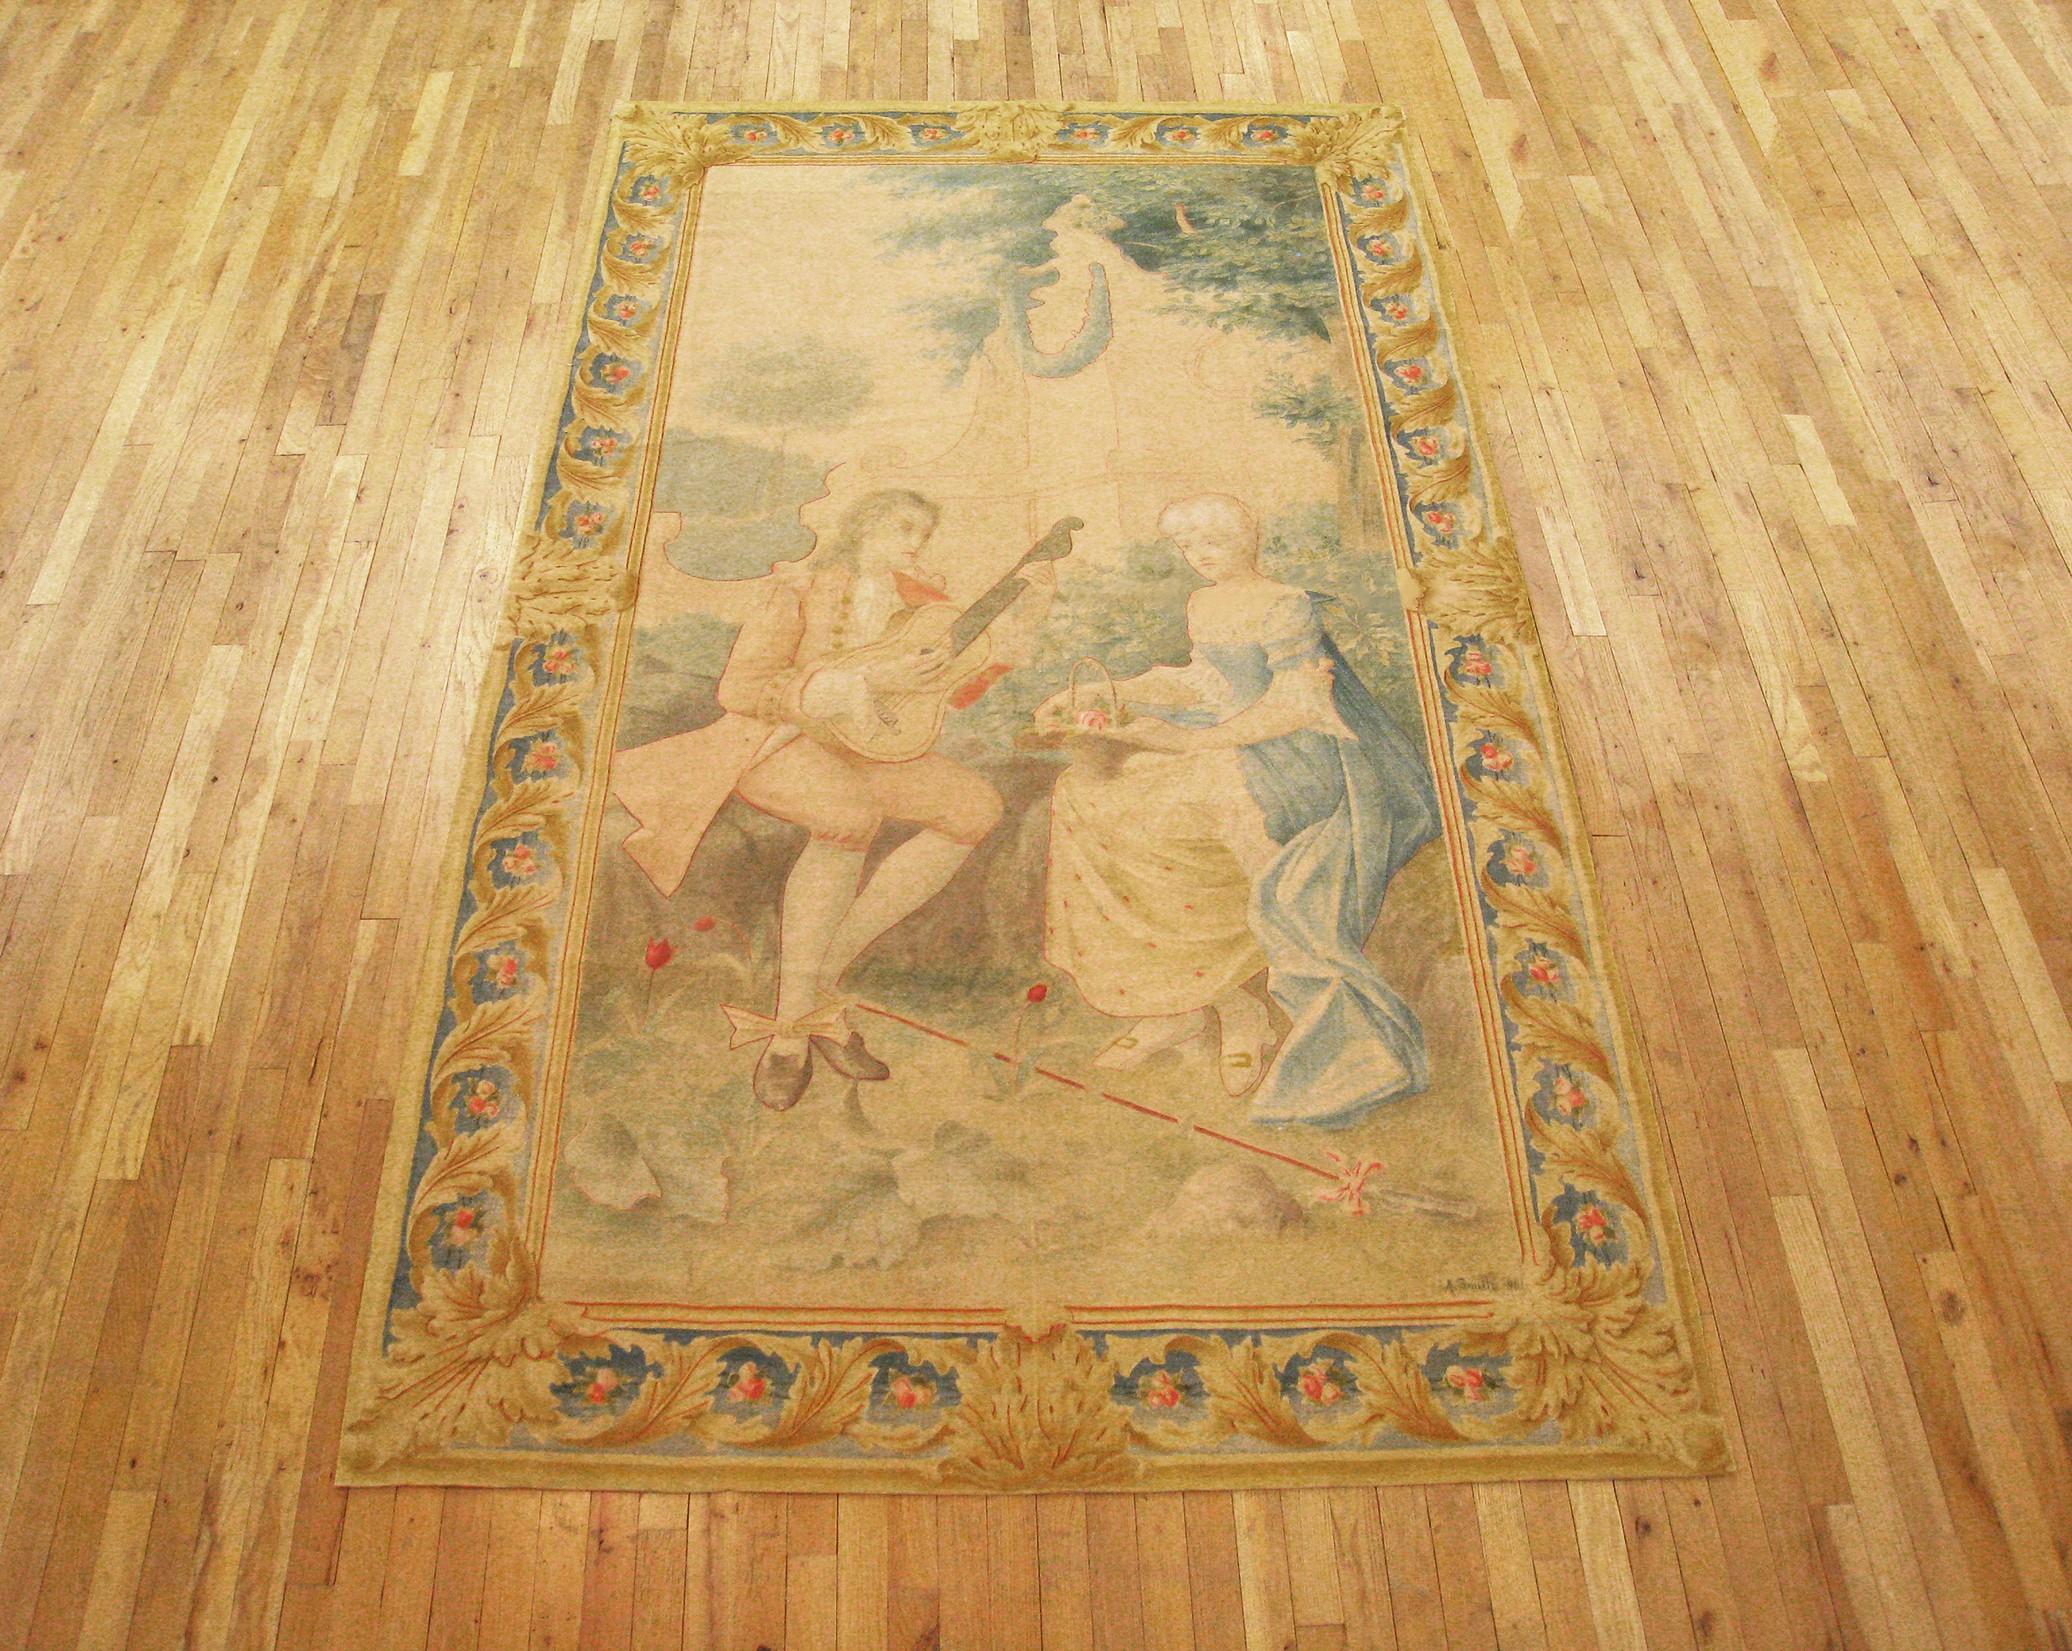 Ein französischer Aubusson-Wandteppich aus dem späten 19. Jahrhundert, der einen Mann darstellt, der vor einer Frau in einer grünen Umgebung musiziert. Eingefasst von einem eleganten Rahmen aus Akanthusblättern. Wolle. Maße: 9'5 